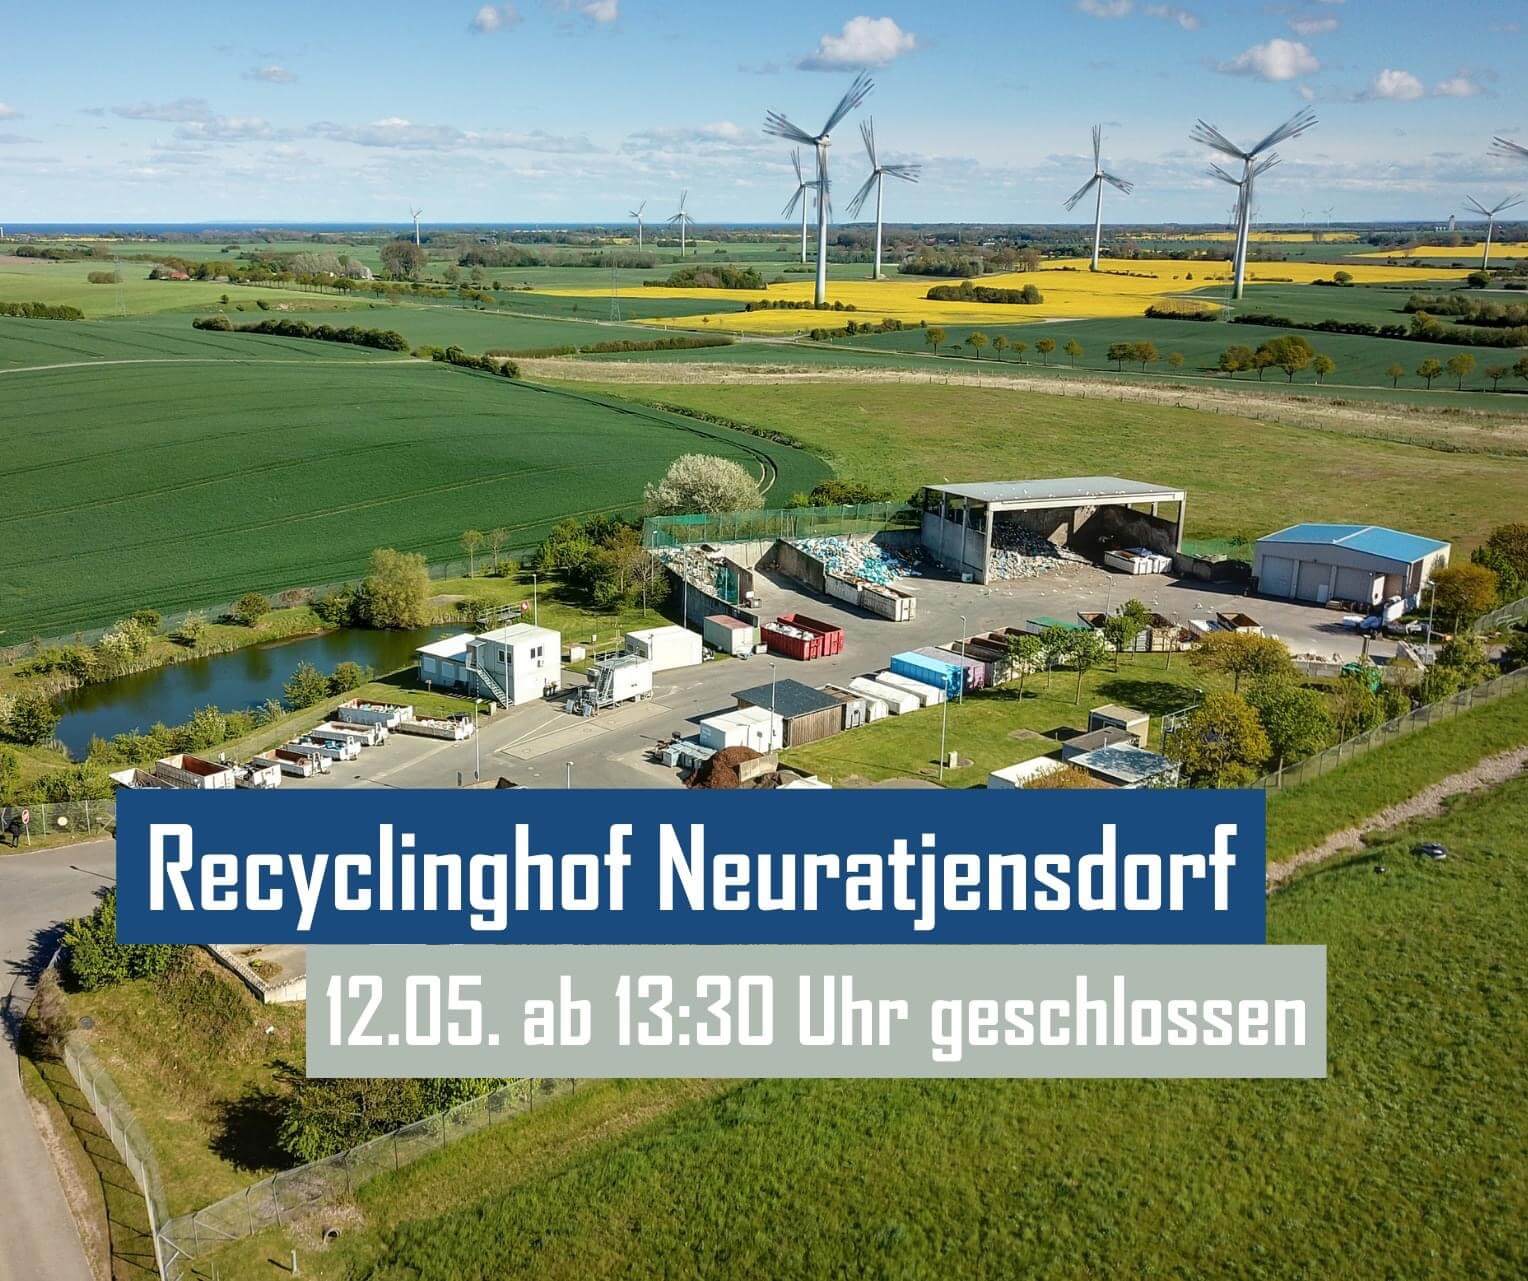 Recyclinghof Neuratjensdorf am 12.05. ab 13:30 geschlossen